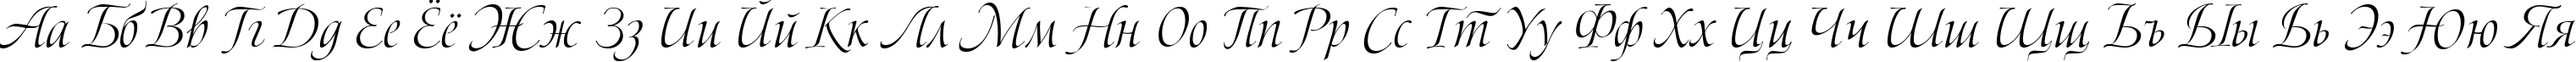 Пример написания русского алфавита шрифтом Bolero script